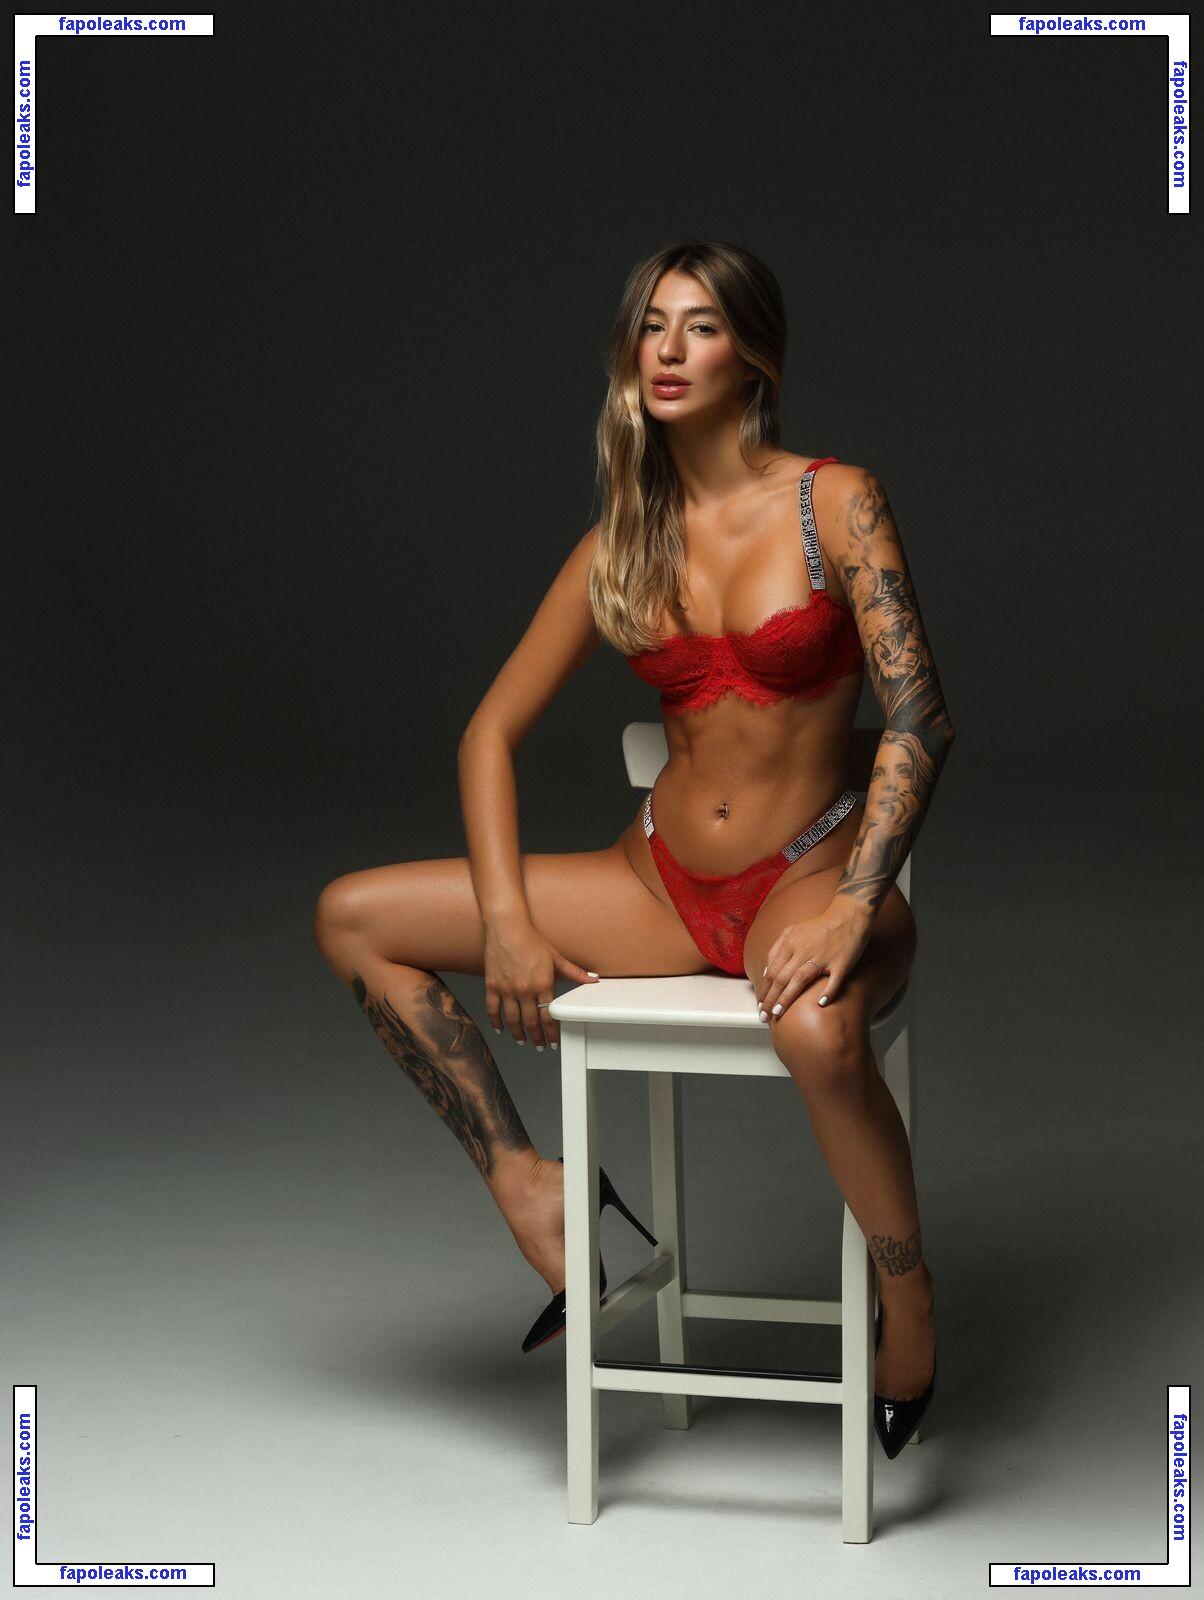 Raissa Bejar / raissaabejar nude photo #0005 from OnlyFans